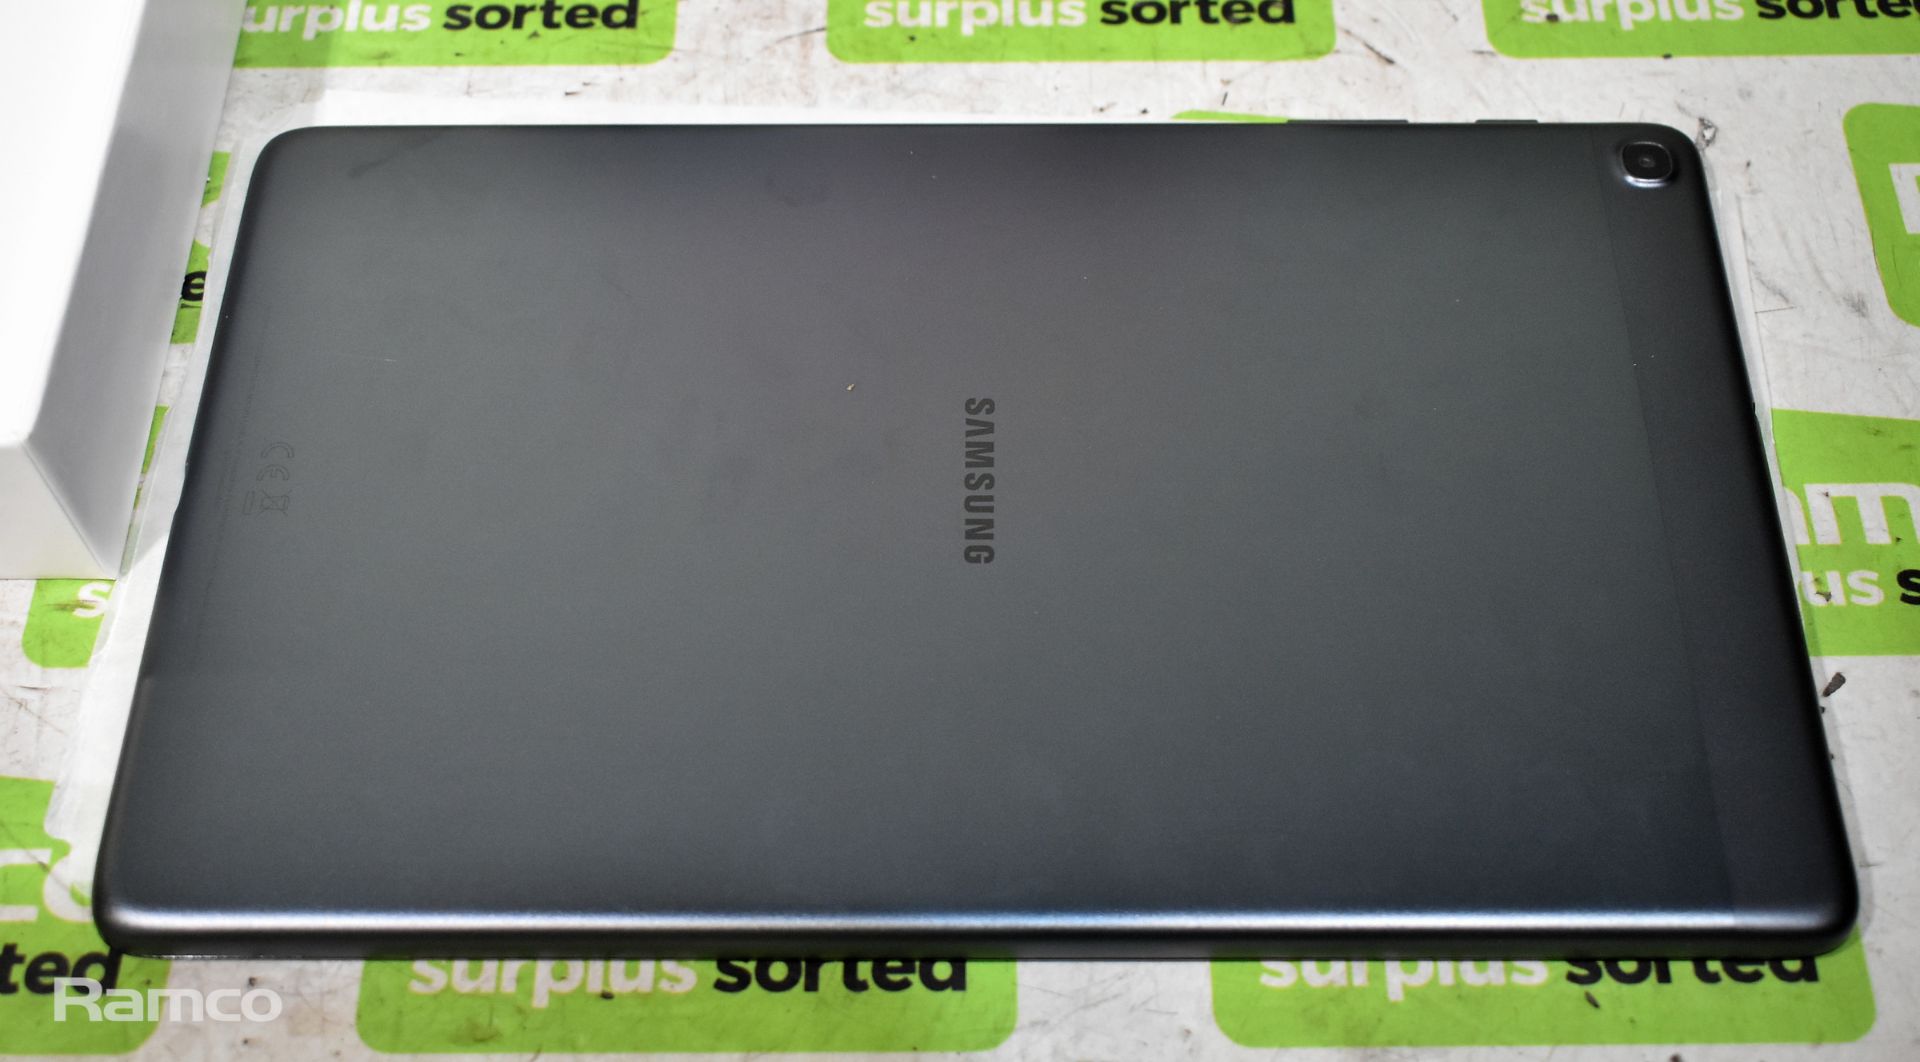 Samsung Galaxy Tab A SM-T510, 10.1 inchTablet, Wifi, 32GB, 2GB RAM, 8MP AF + 5MP, Black - Image 3 of 4